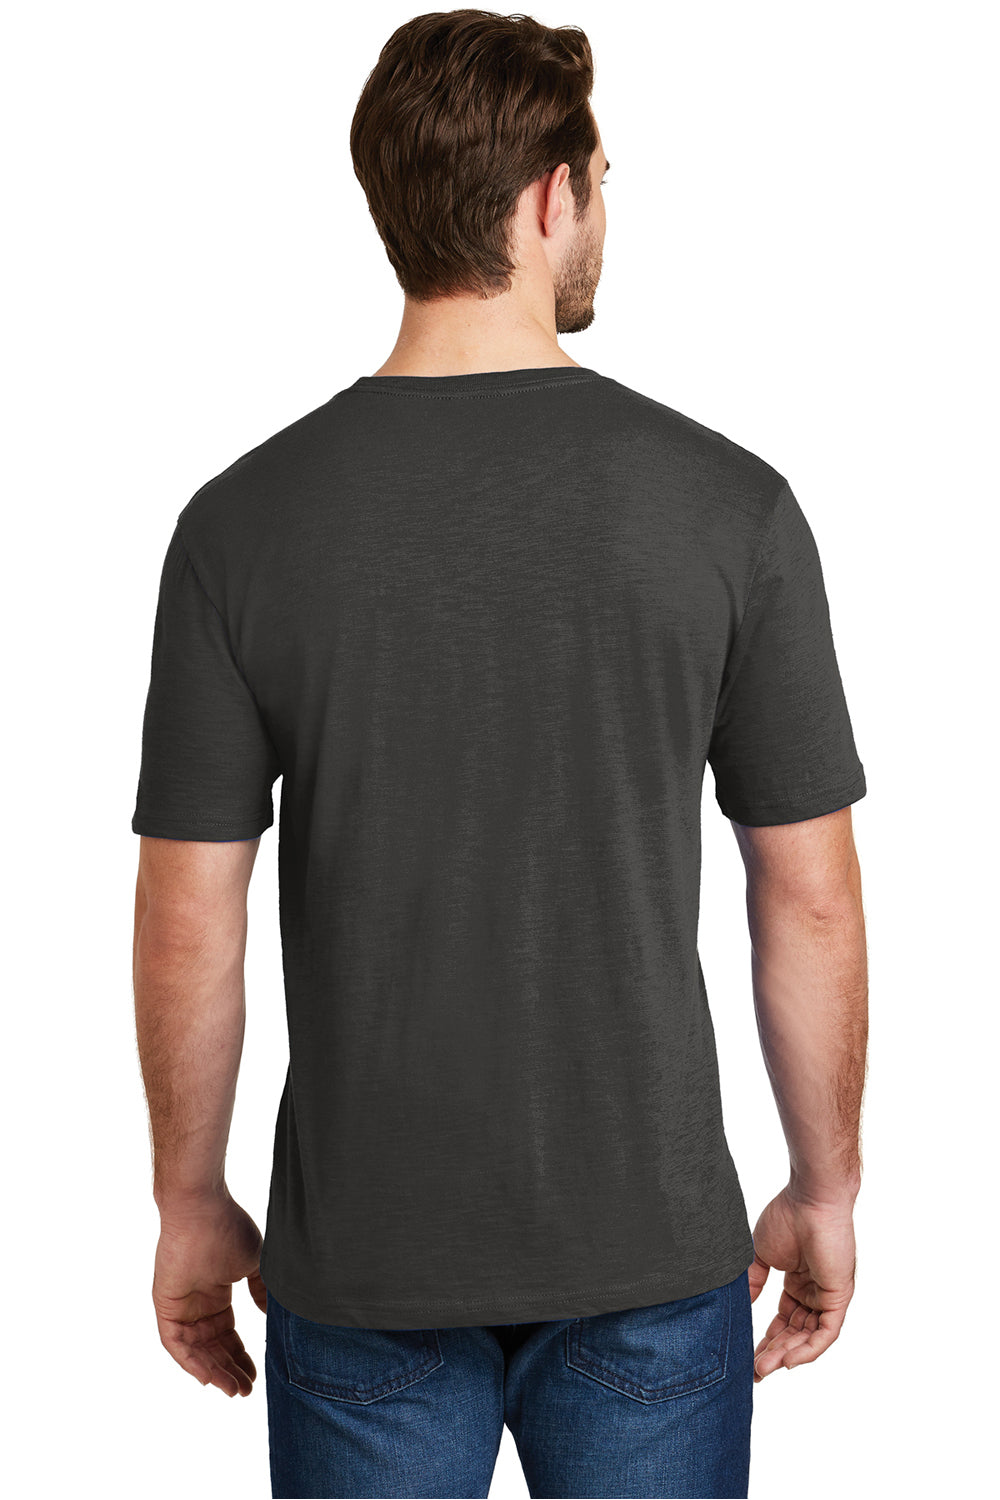 District DM3000 Mens Super Slub Short Sleeve Crewneck T-Shirt Charcoal Grey Back